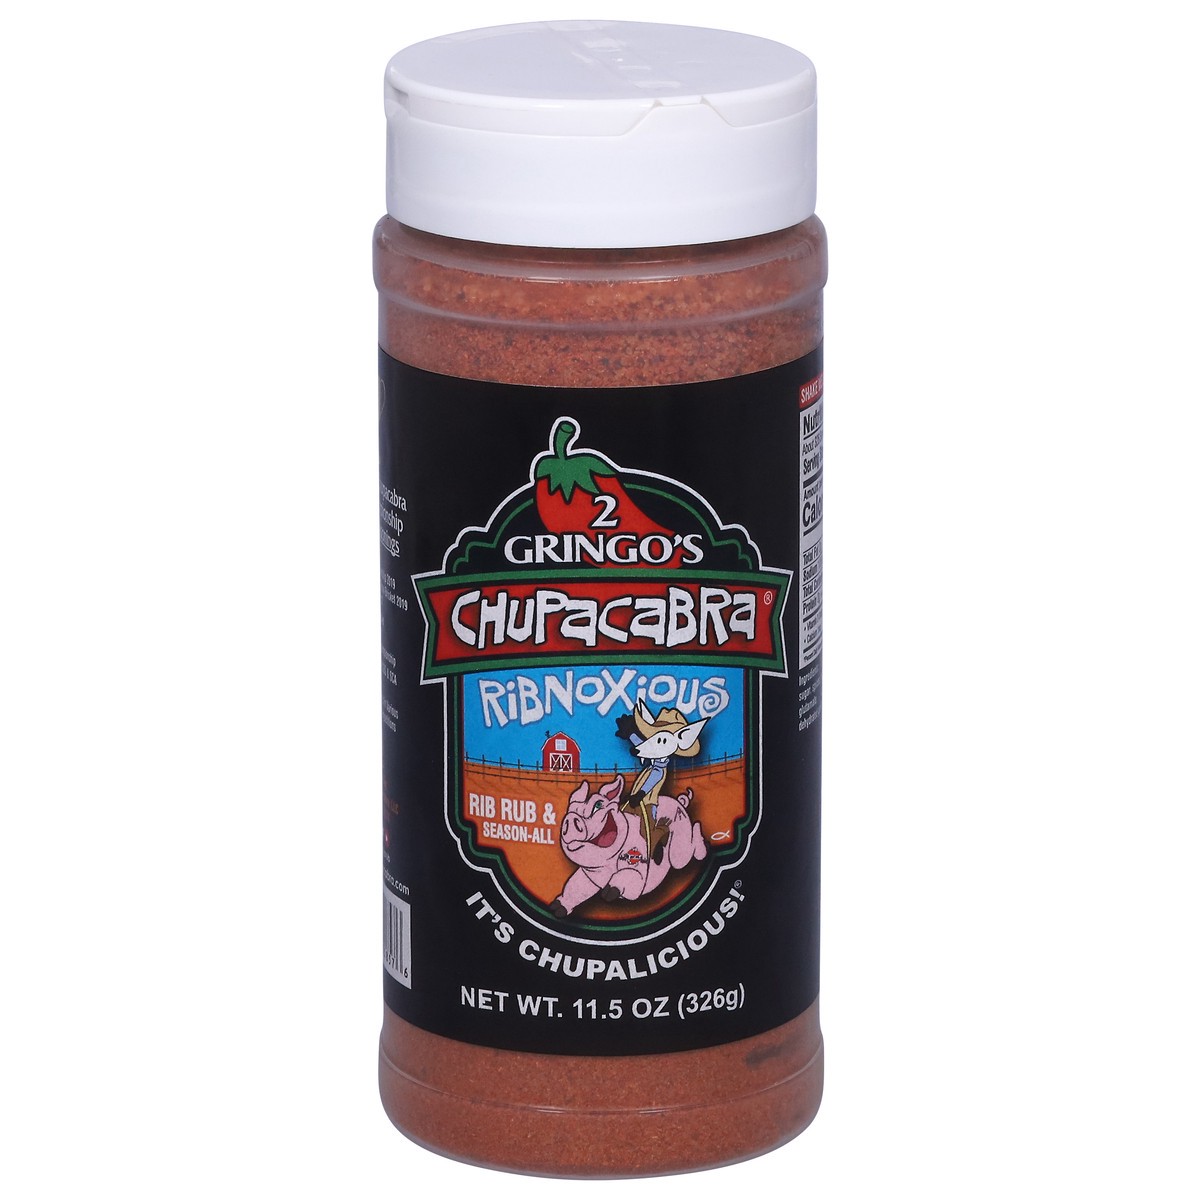 slide 1 of 13, 2 Gringo's Chupacabra Ribnoxious Seasoning 11.5 oz, 11.5 oz